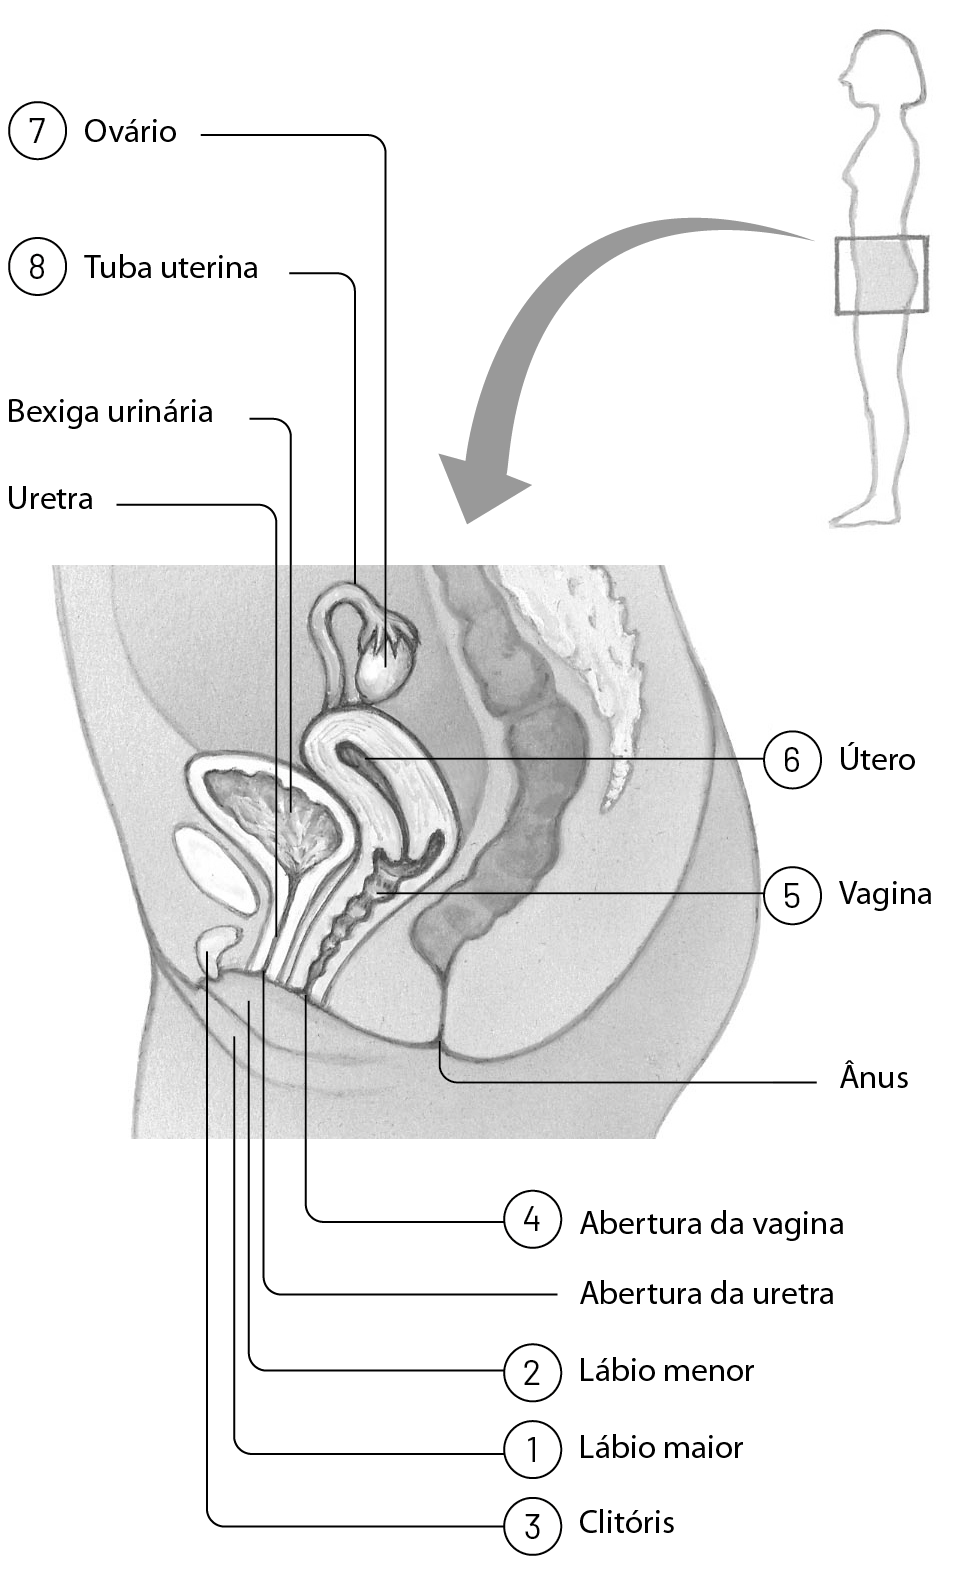 Esquema. Contorno de uma mulher de perfil. De sua região pubiana sai uma seta para o esquema do sistema genital. Linhas de chamada indicam as partes. Lábio maior (1), lábio menor (2), clitóris (3), abertura da vagina (4), ânus, vagina (5), útero (6), uretra, bexiga urinária, ovário (7), tuba uterina (8). Ânus, bexiga urinária, uretra e abertura da uretra também estão ilustrados. Ao lado, imagem frontal com linhas de chamada indicando: vagina, ovários, útero e tubas uterinas